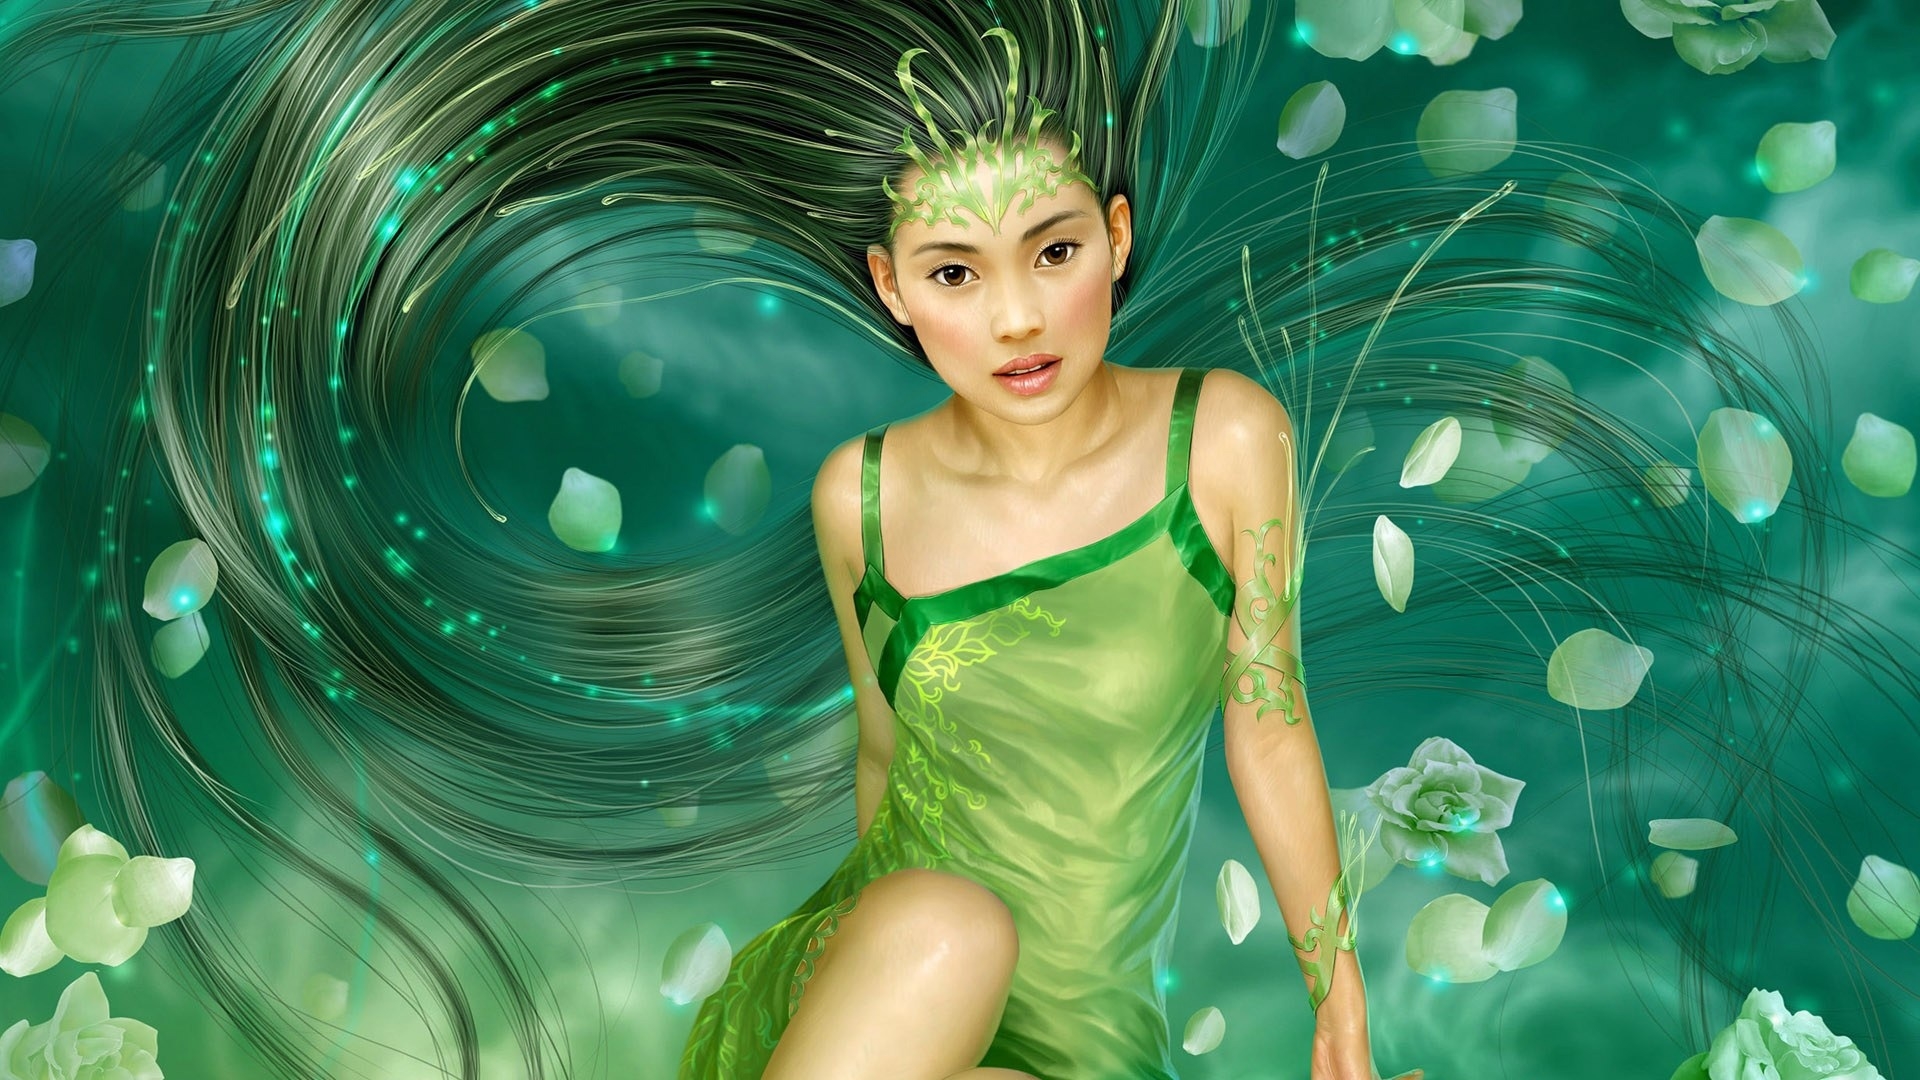 Fantasy Girl Green for 1920 x 1080 HDTV 1080p resolution